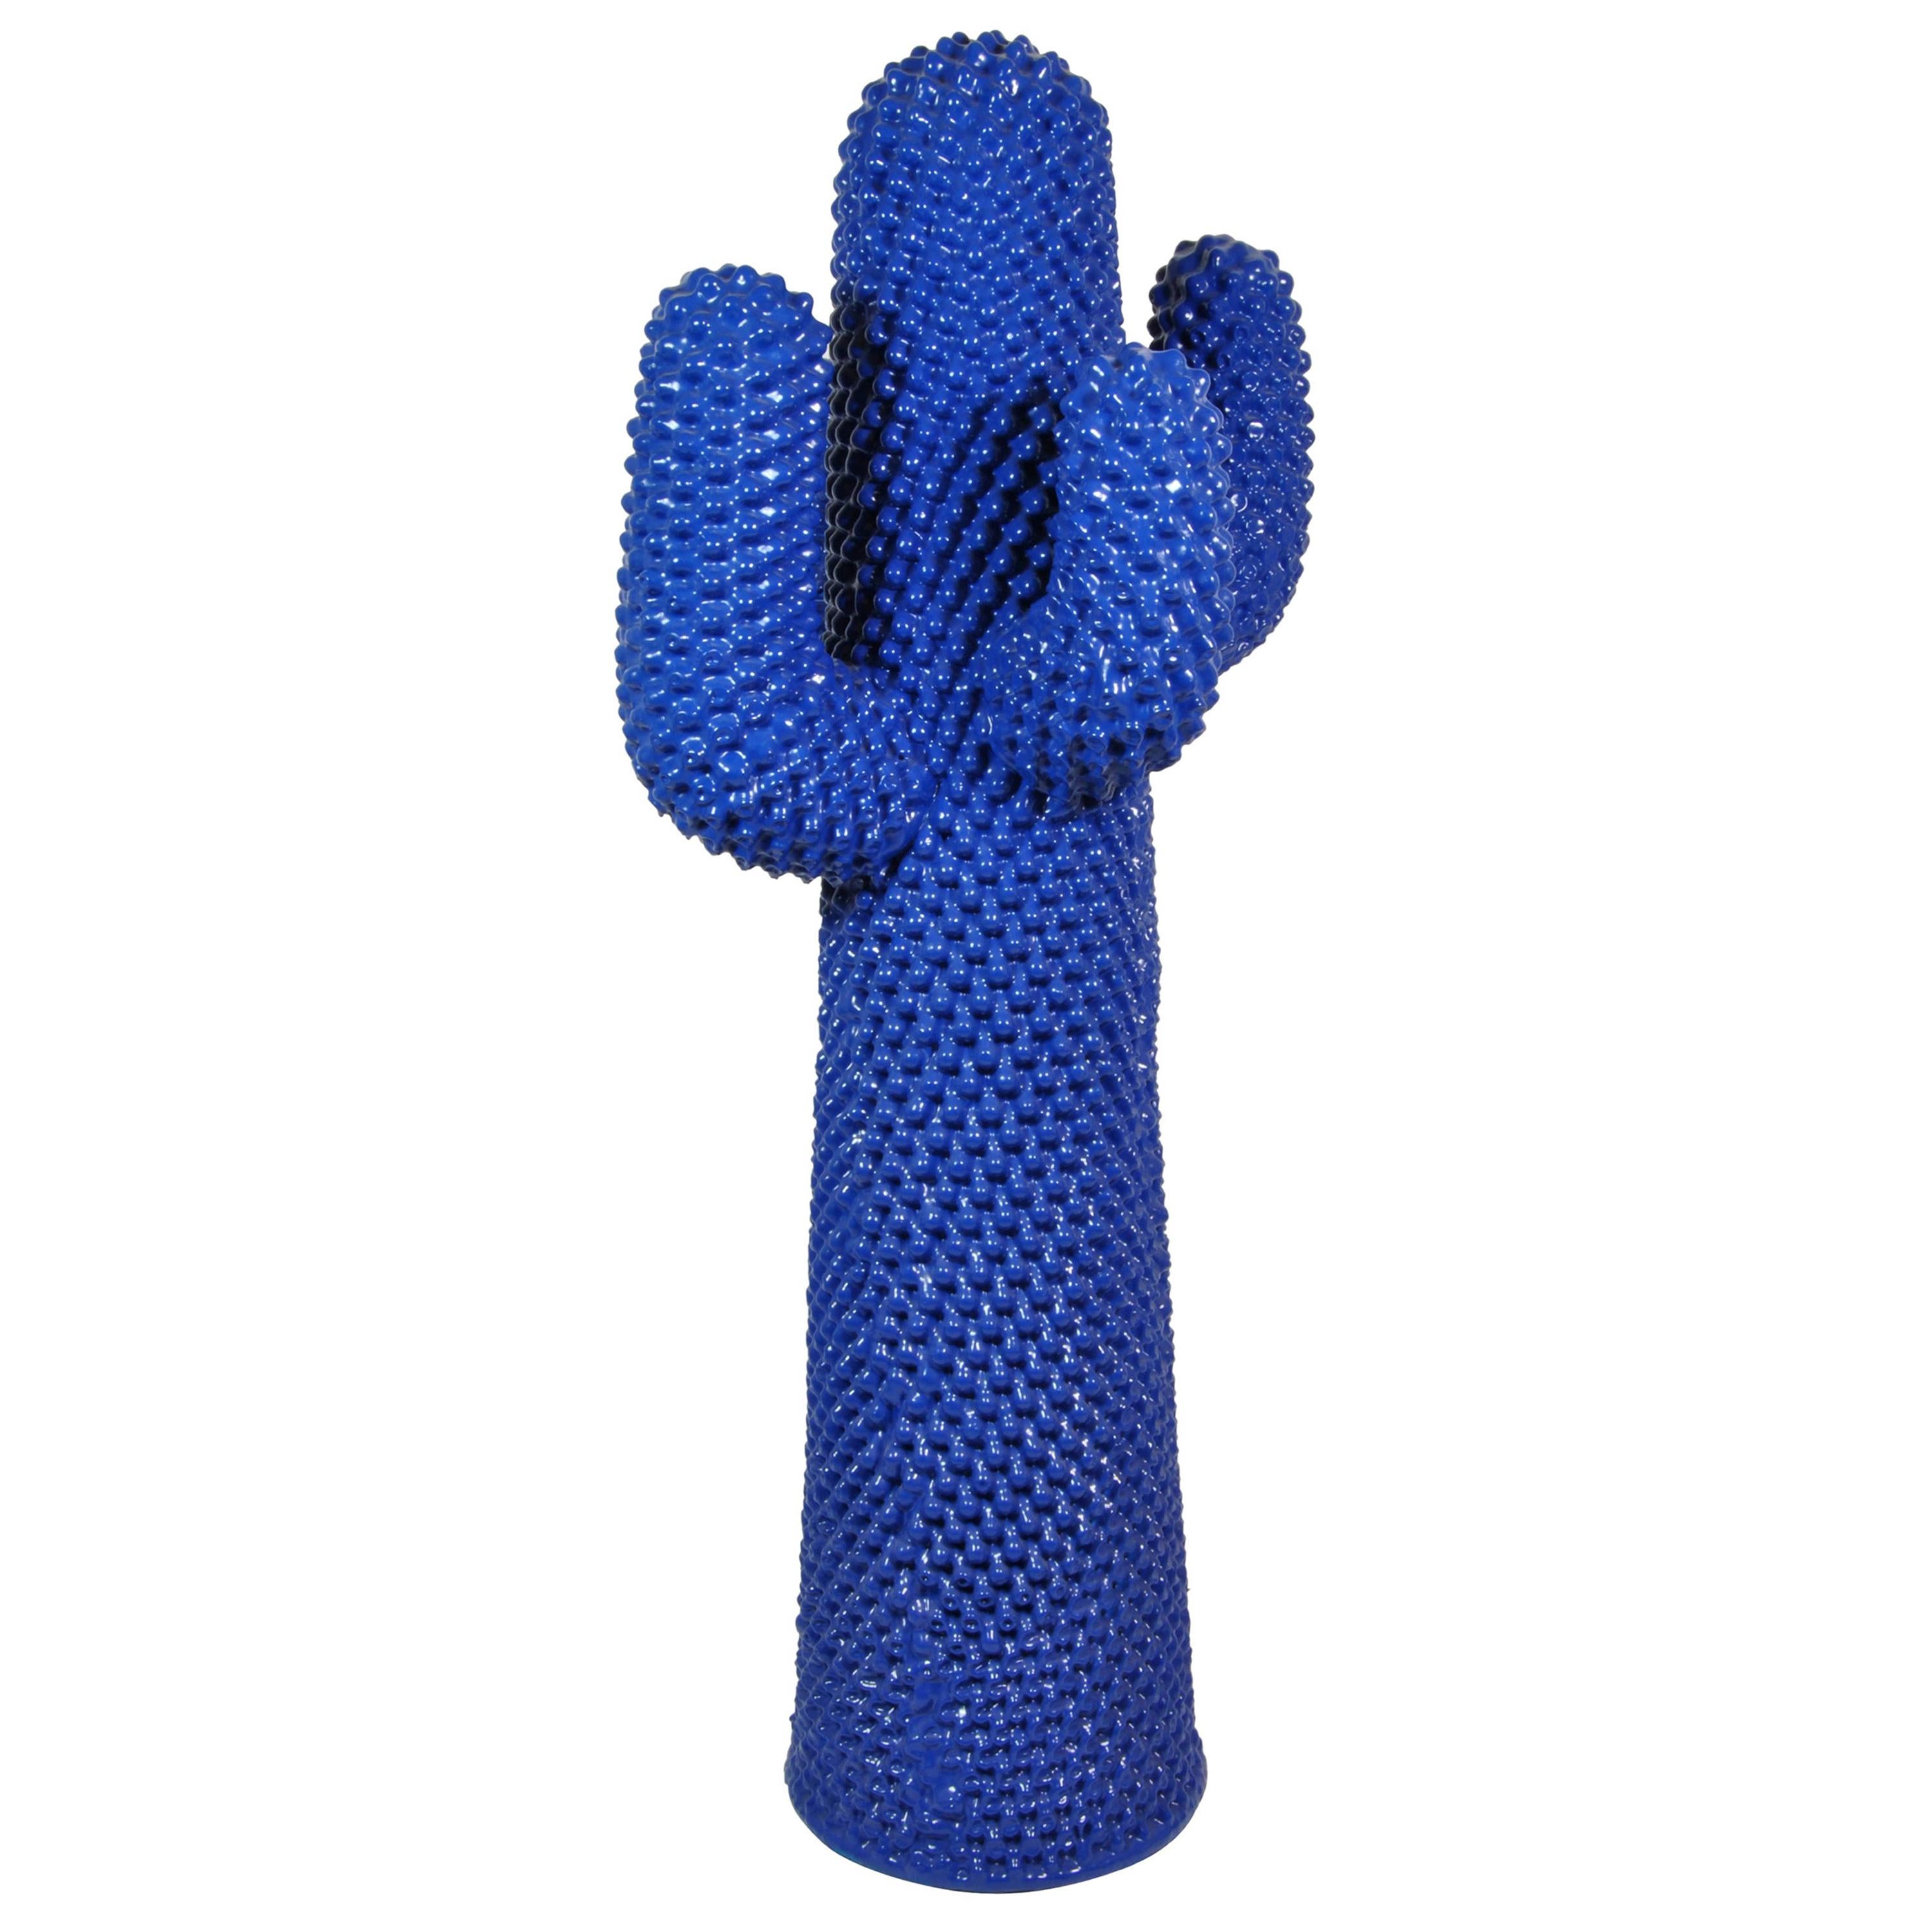 « Le Bleu Cactus », édition limitée, design Drocco & Mello pour Gufram, Italie, 2015 en vente